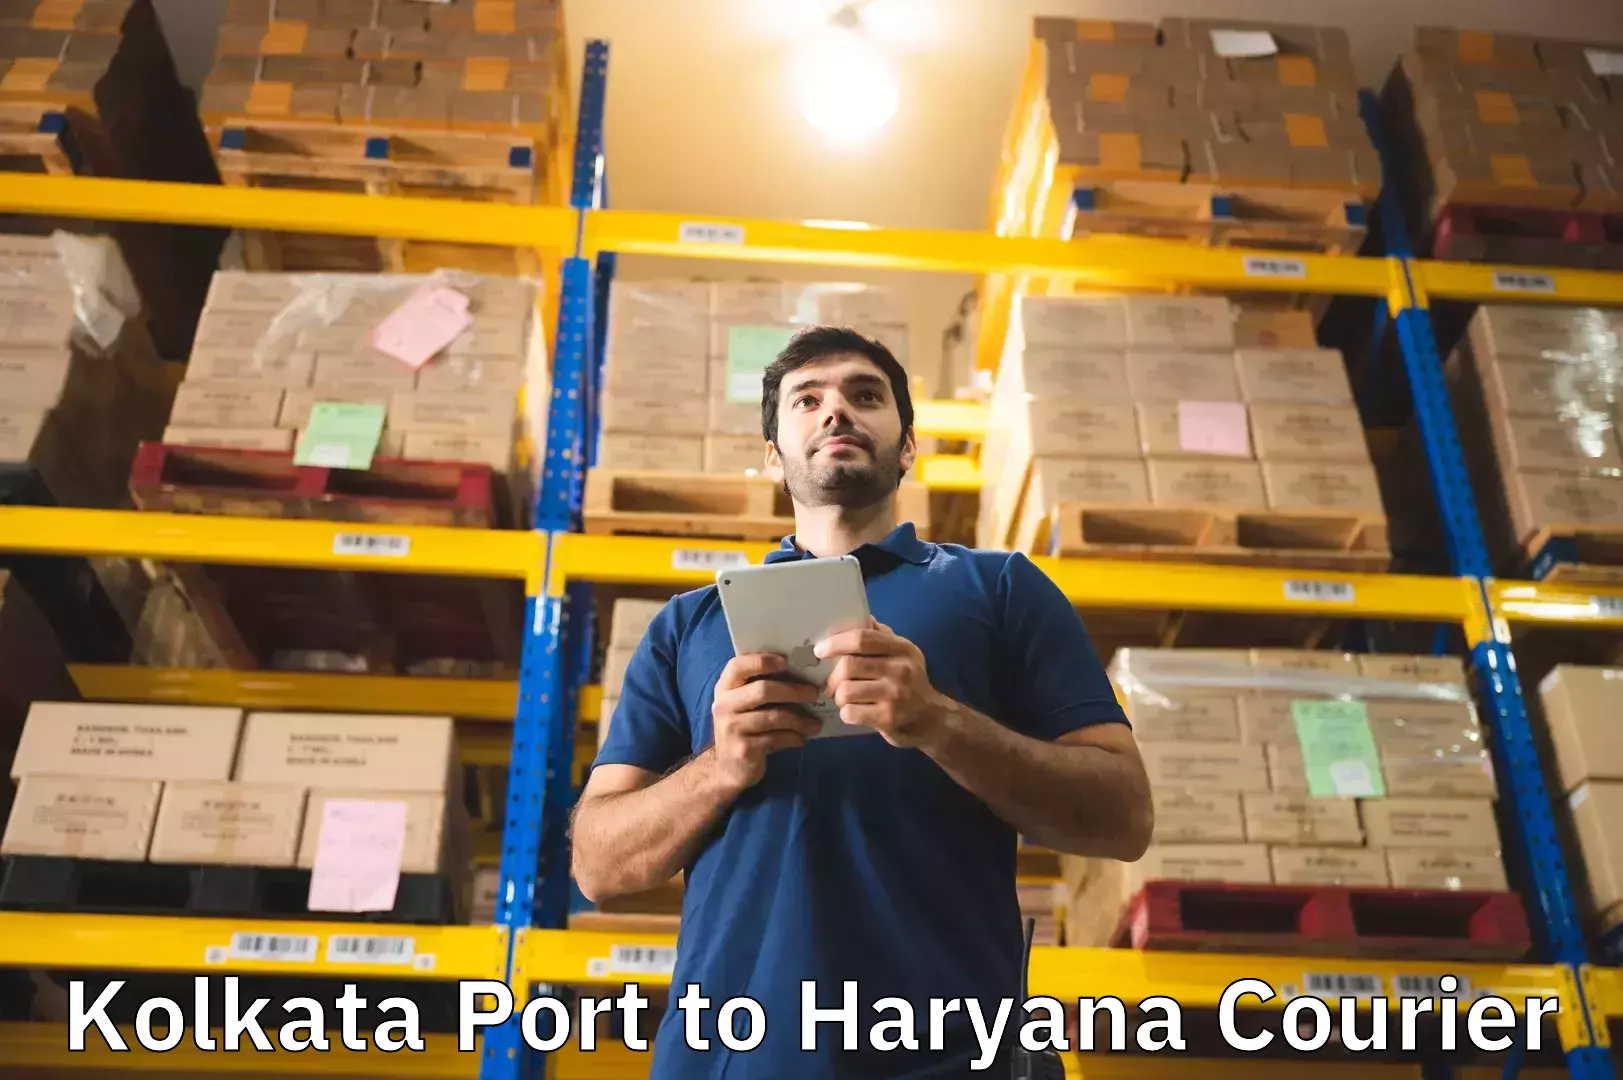 Luggage shipment processing Kolkata Port to Chaudhary Charan Singh Haryana Agricultural University Hisar